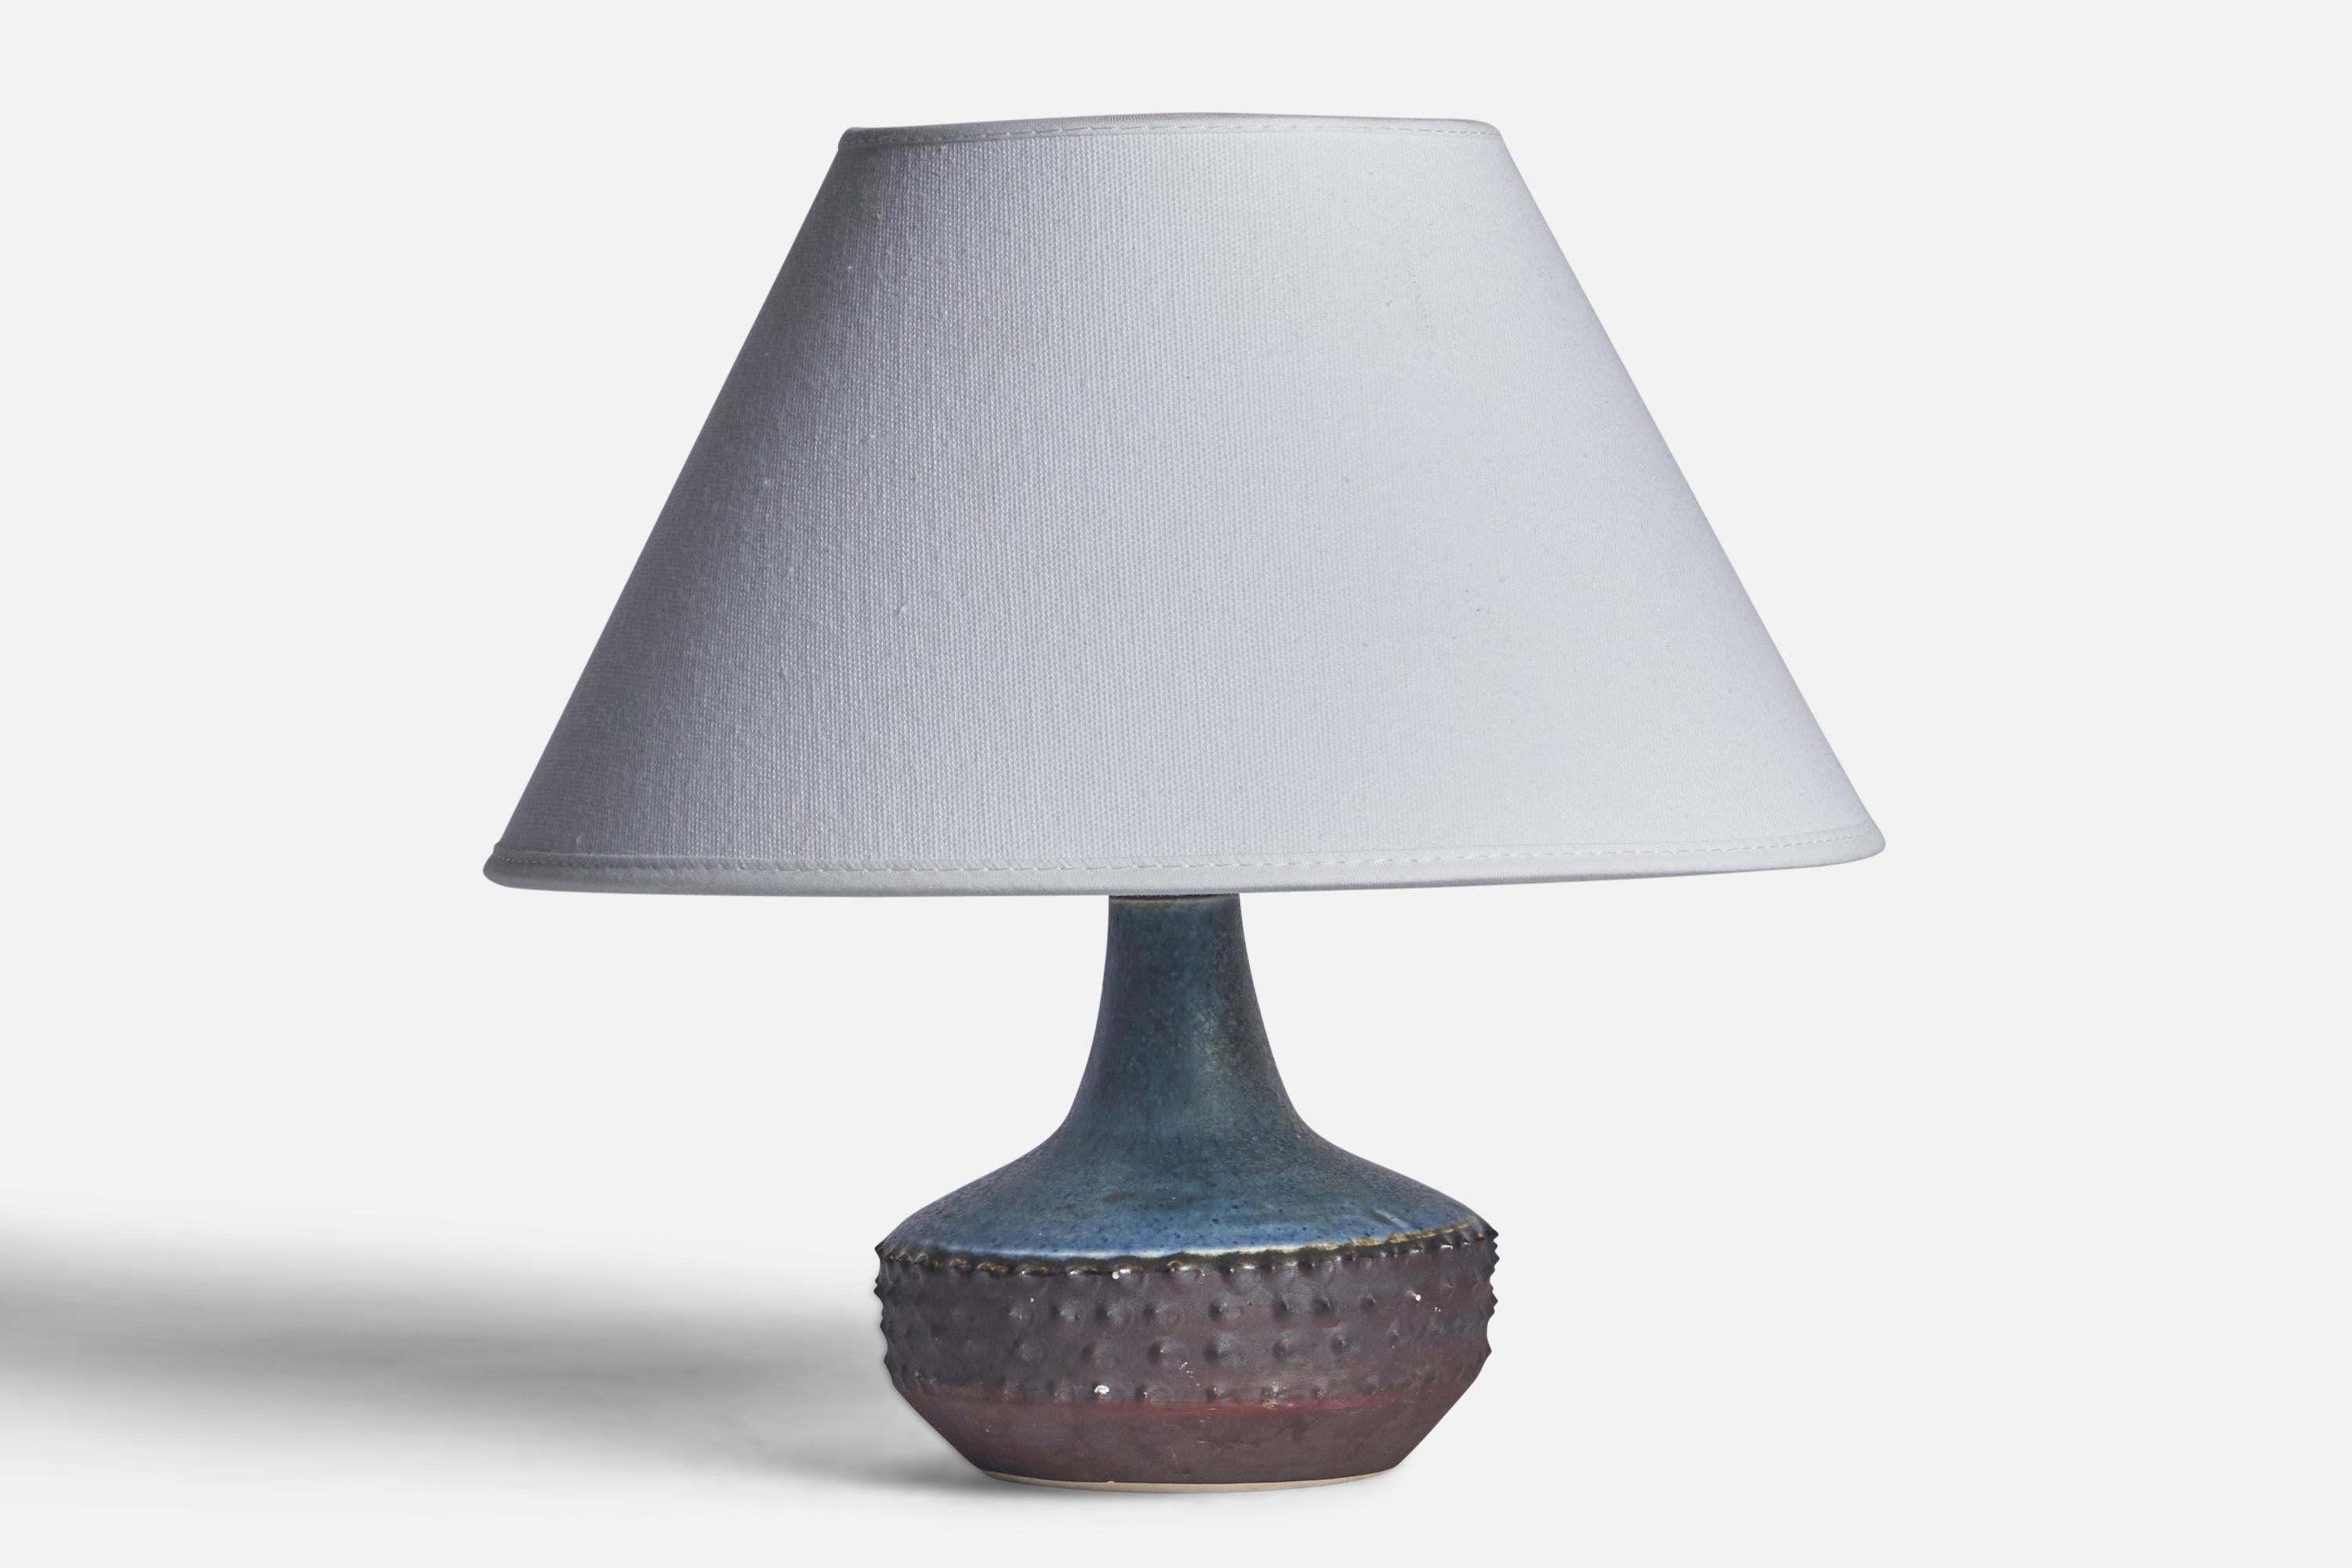 Kleine Tischlampe aus grauem und blau glasiertem Steingut, entworfen und hergestellt in Schweden, 1960er Jahre.

Abmessungen der Lampe (Zoll): 6,65